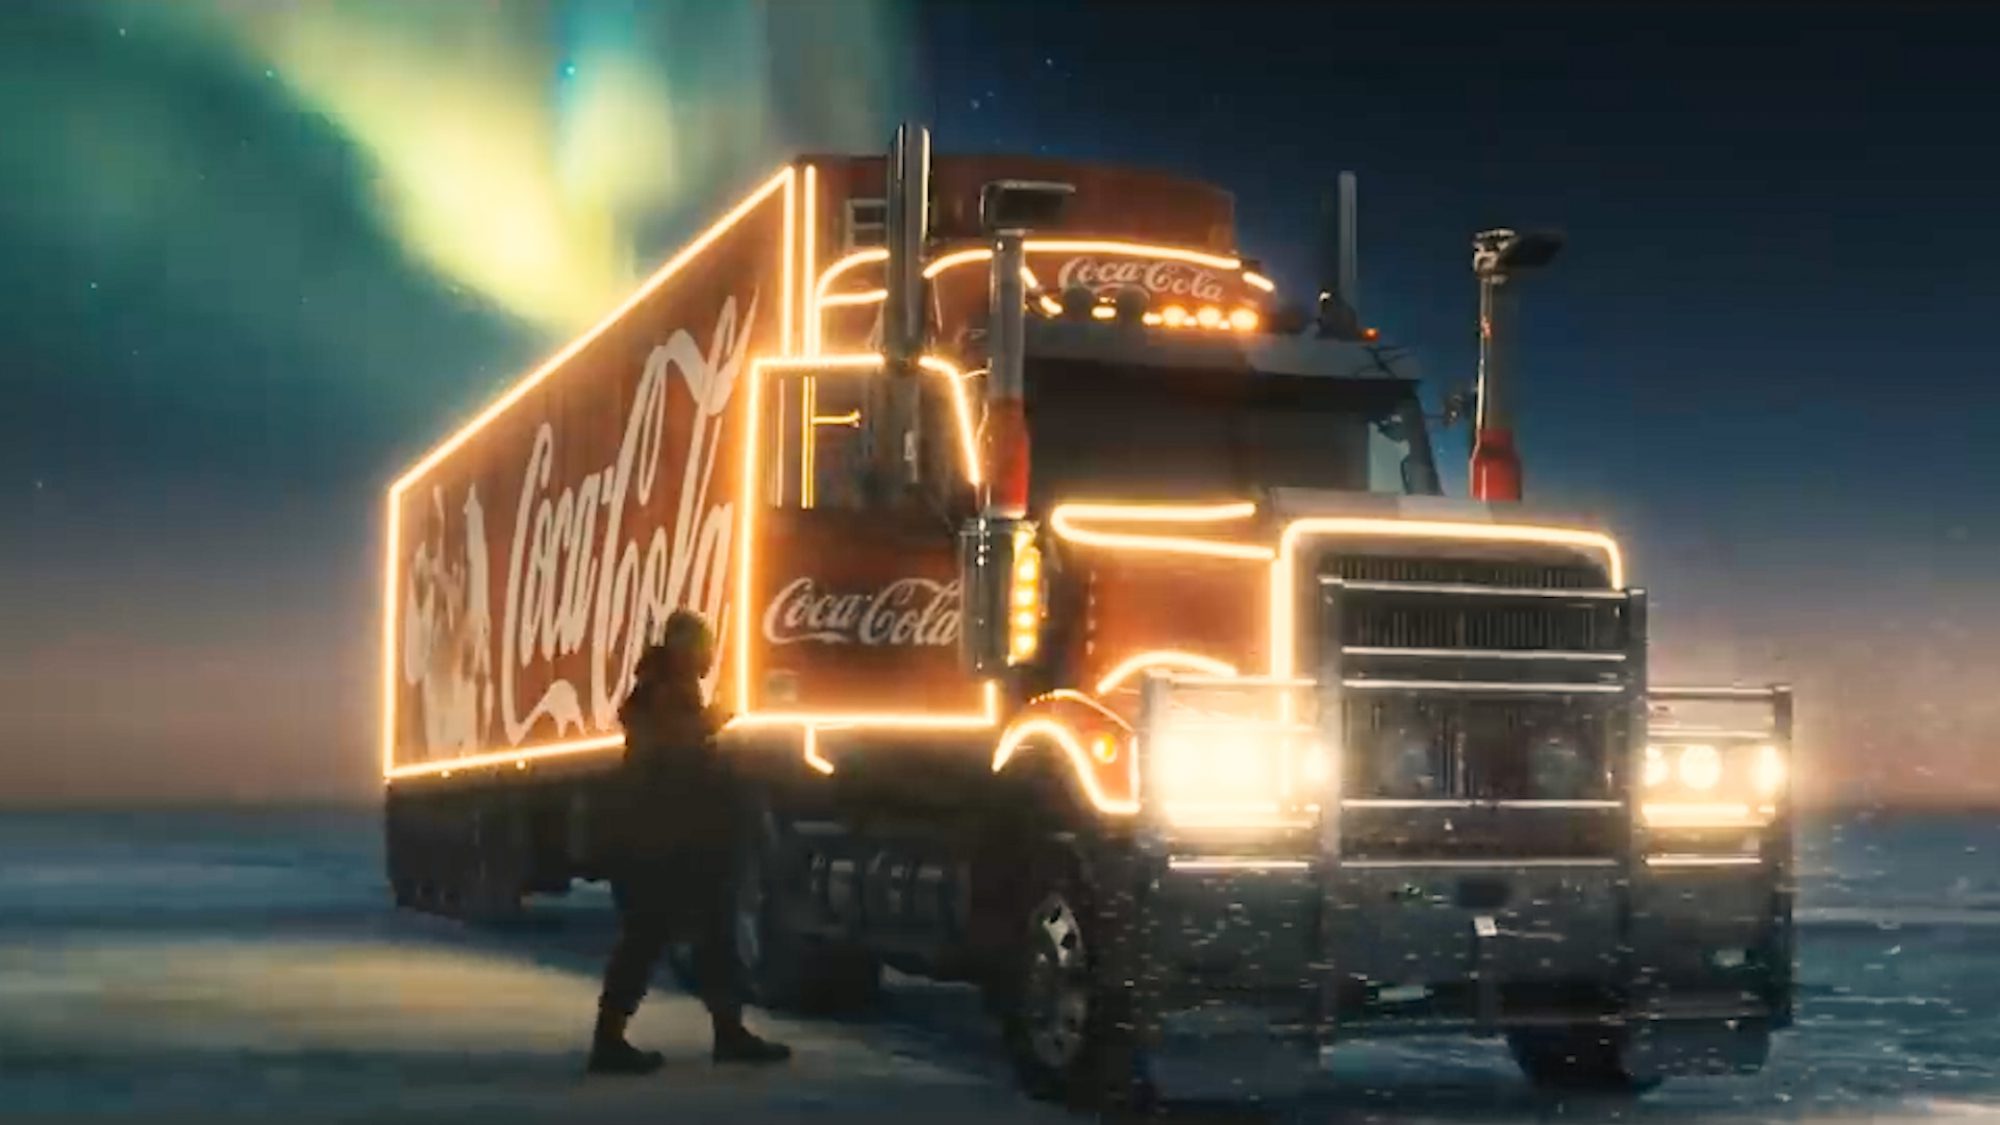 Coca-Cola Christmas Advert 2020